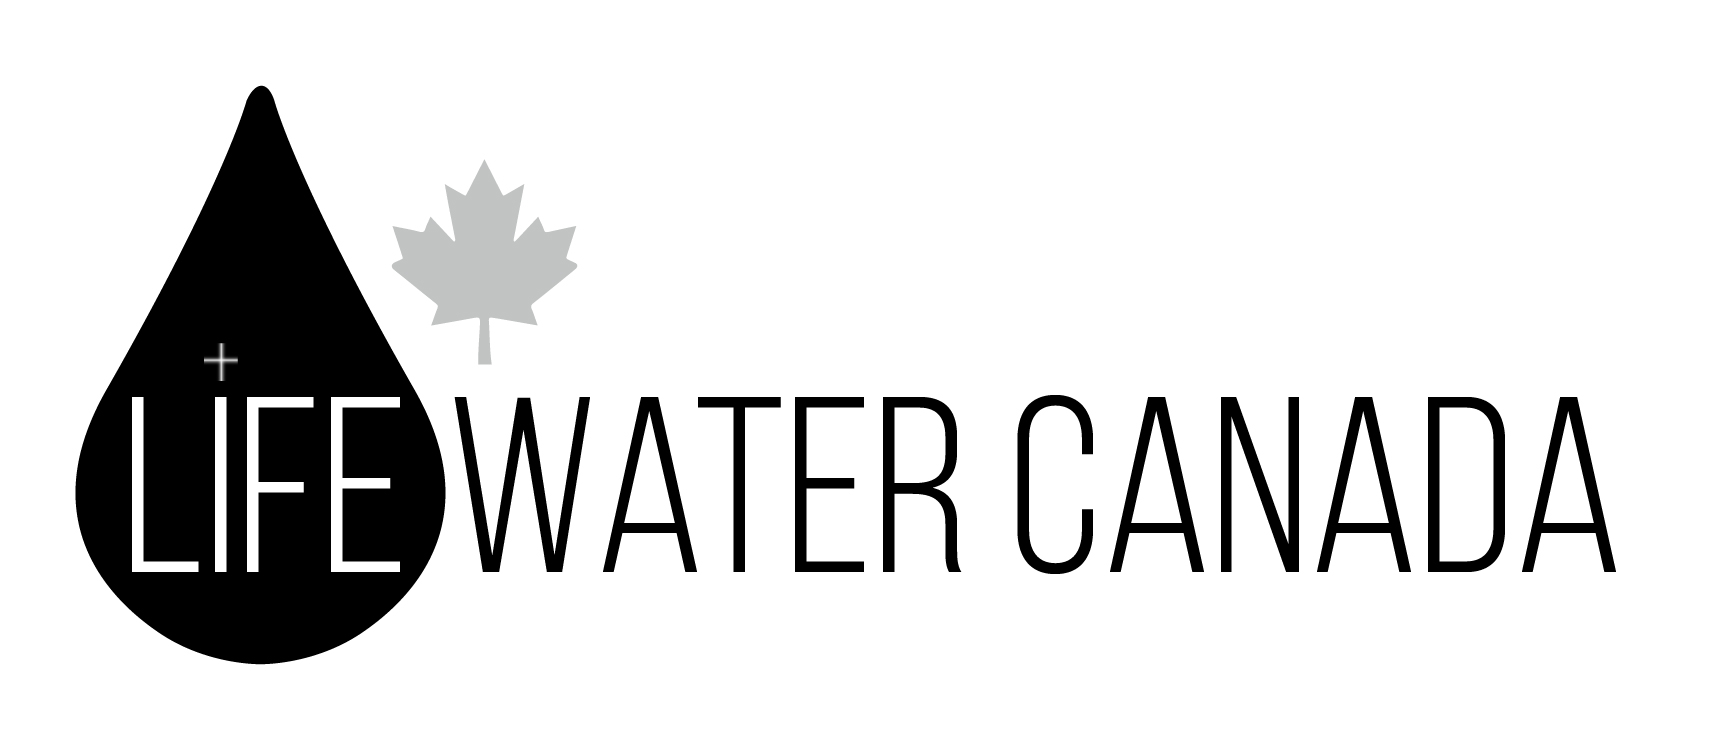 LifeWater Canada Logo_BW.jpg 107 KB